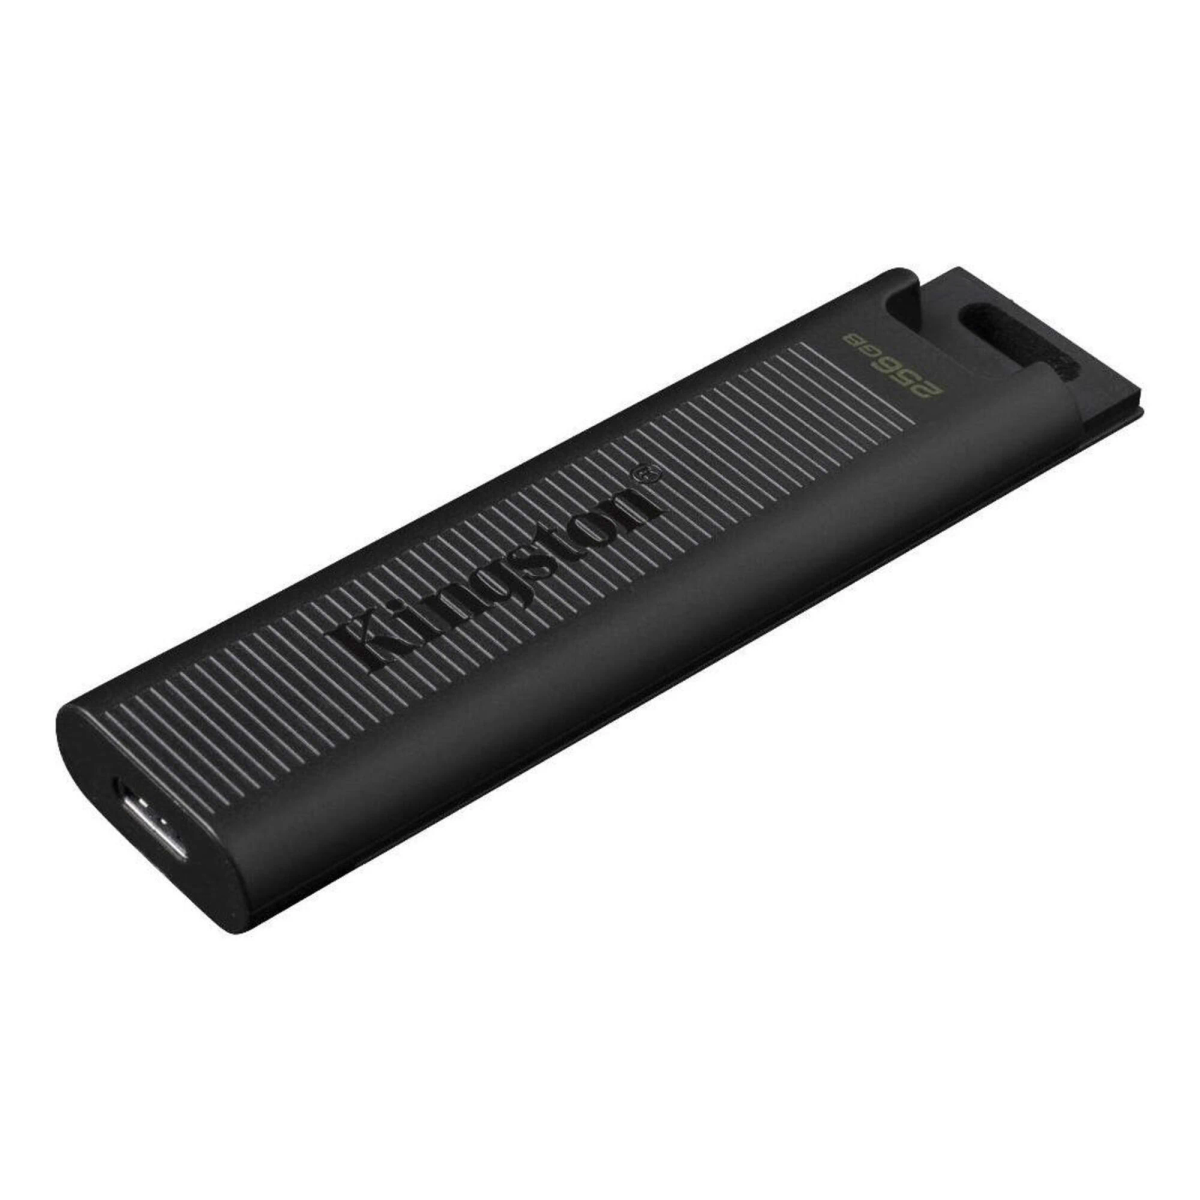 KINGSTON DTMAX/256GB USB Stick GB) (darkslategray, 256